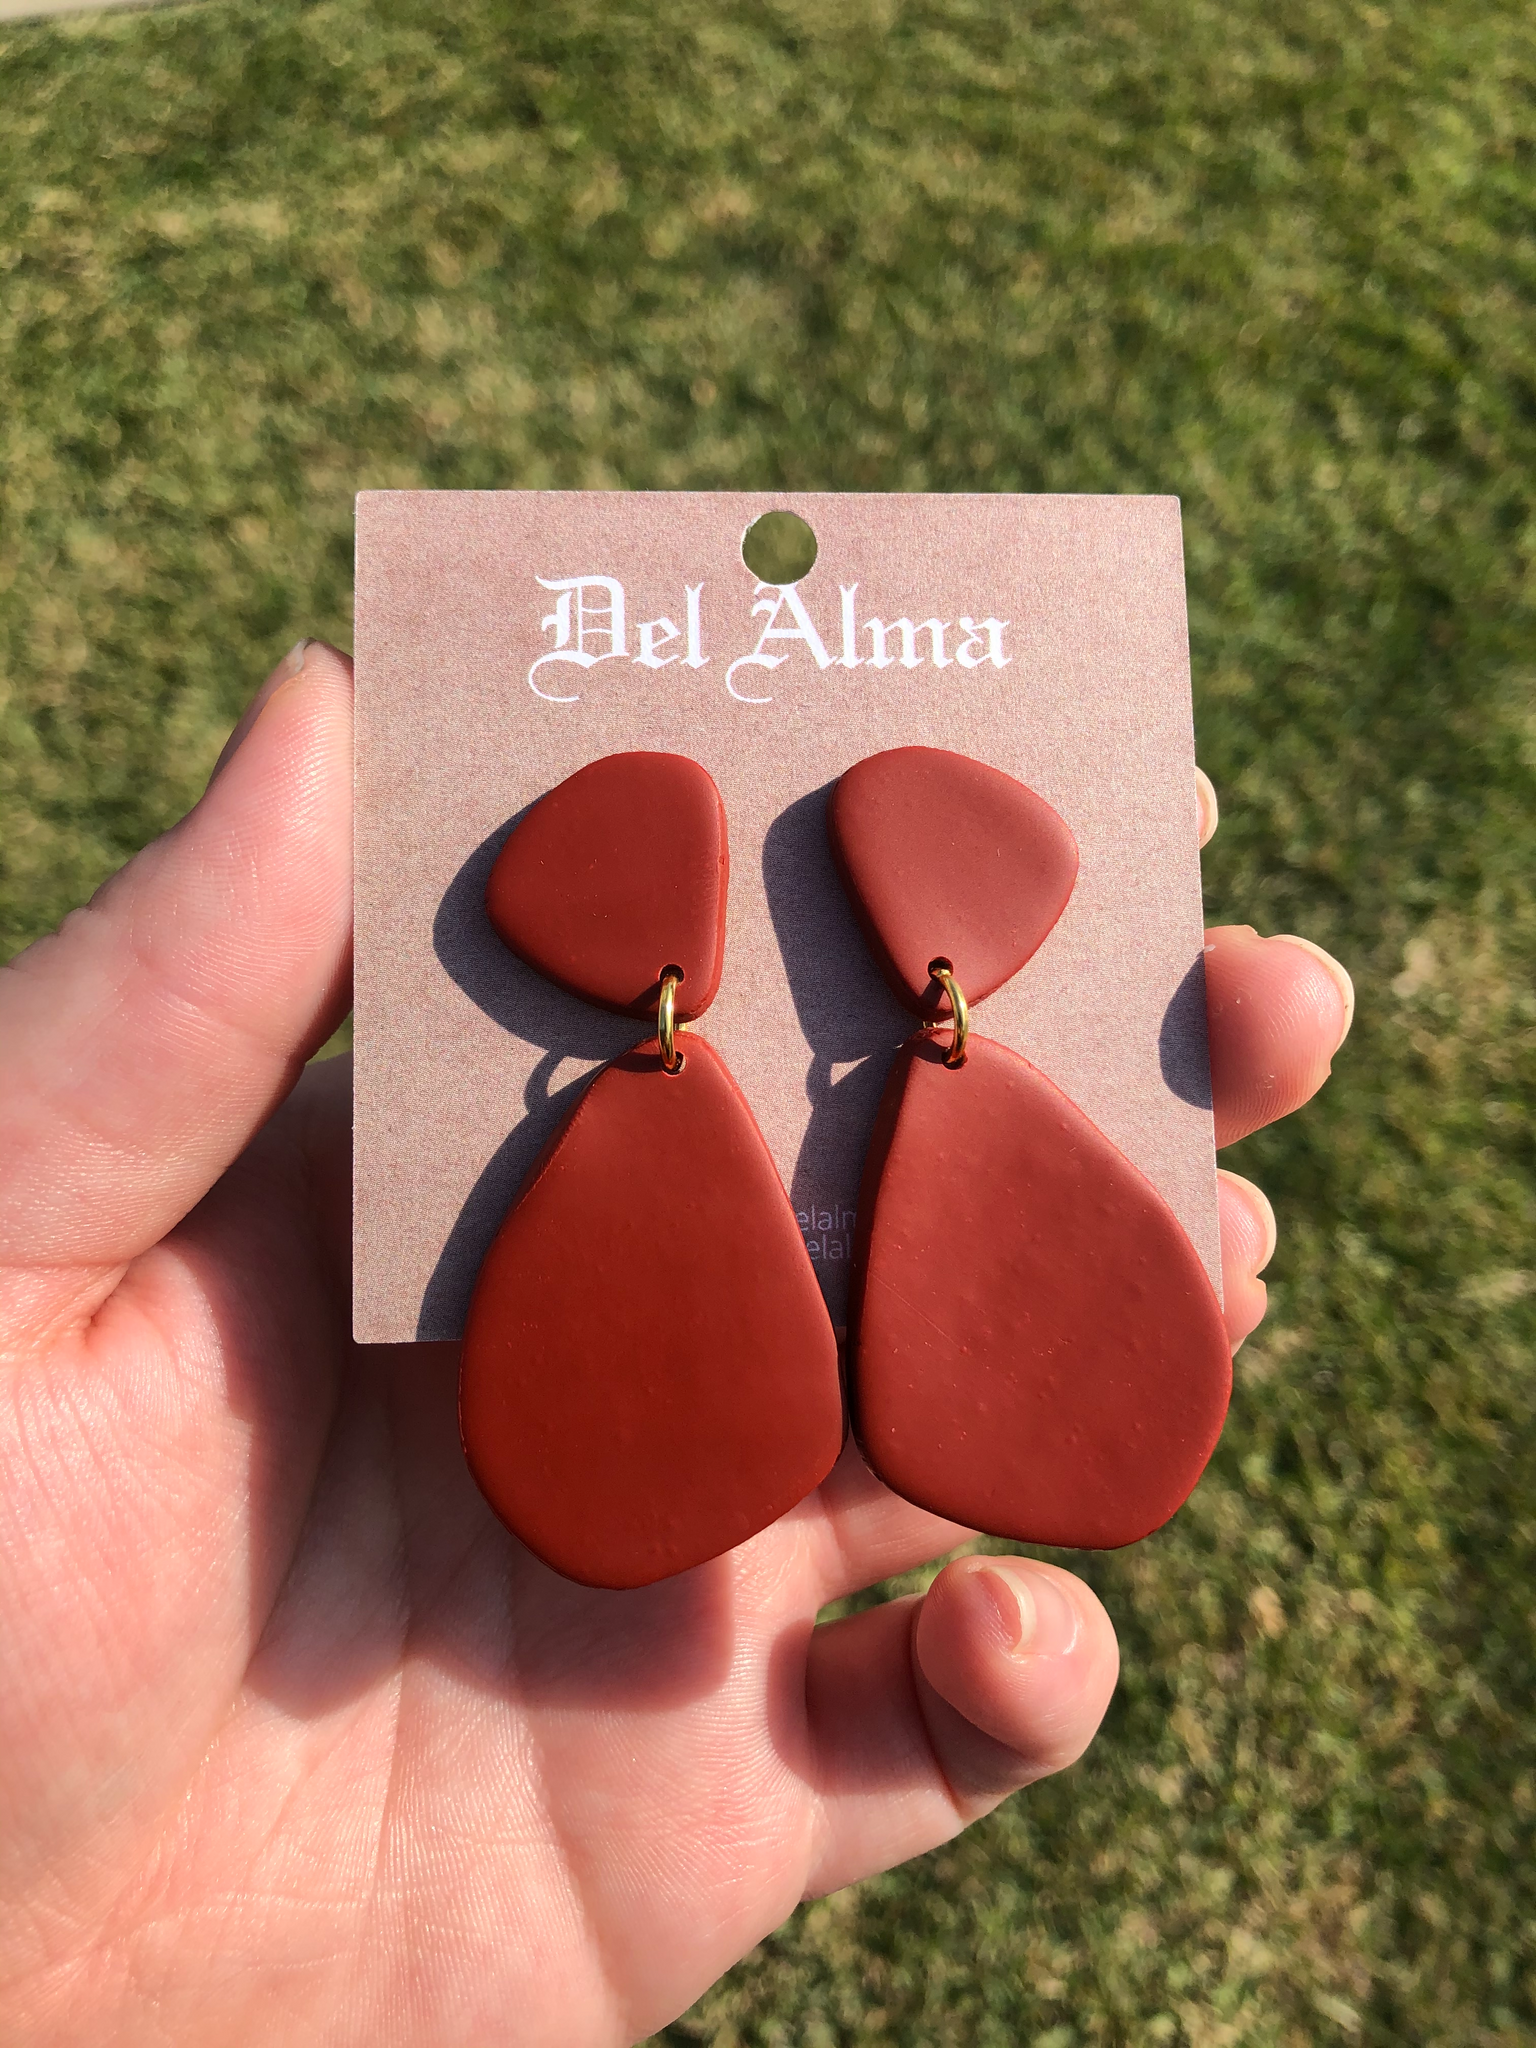 Red “Gum Drops” earrings